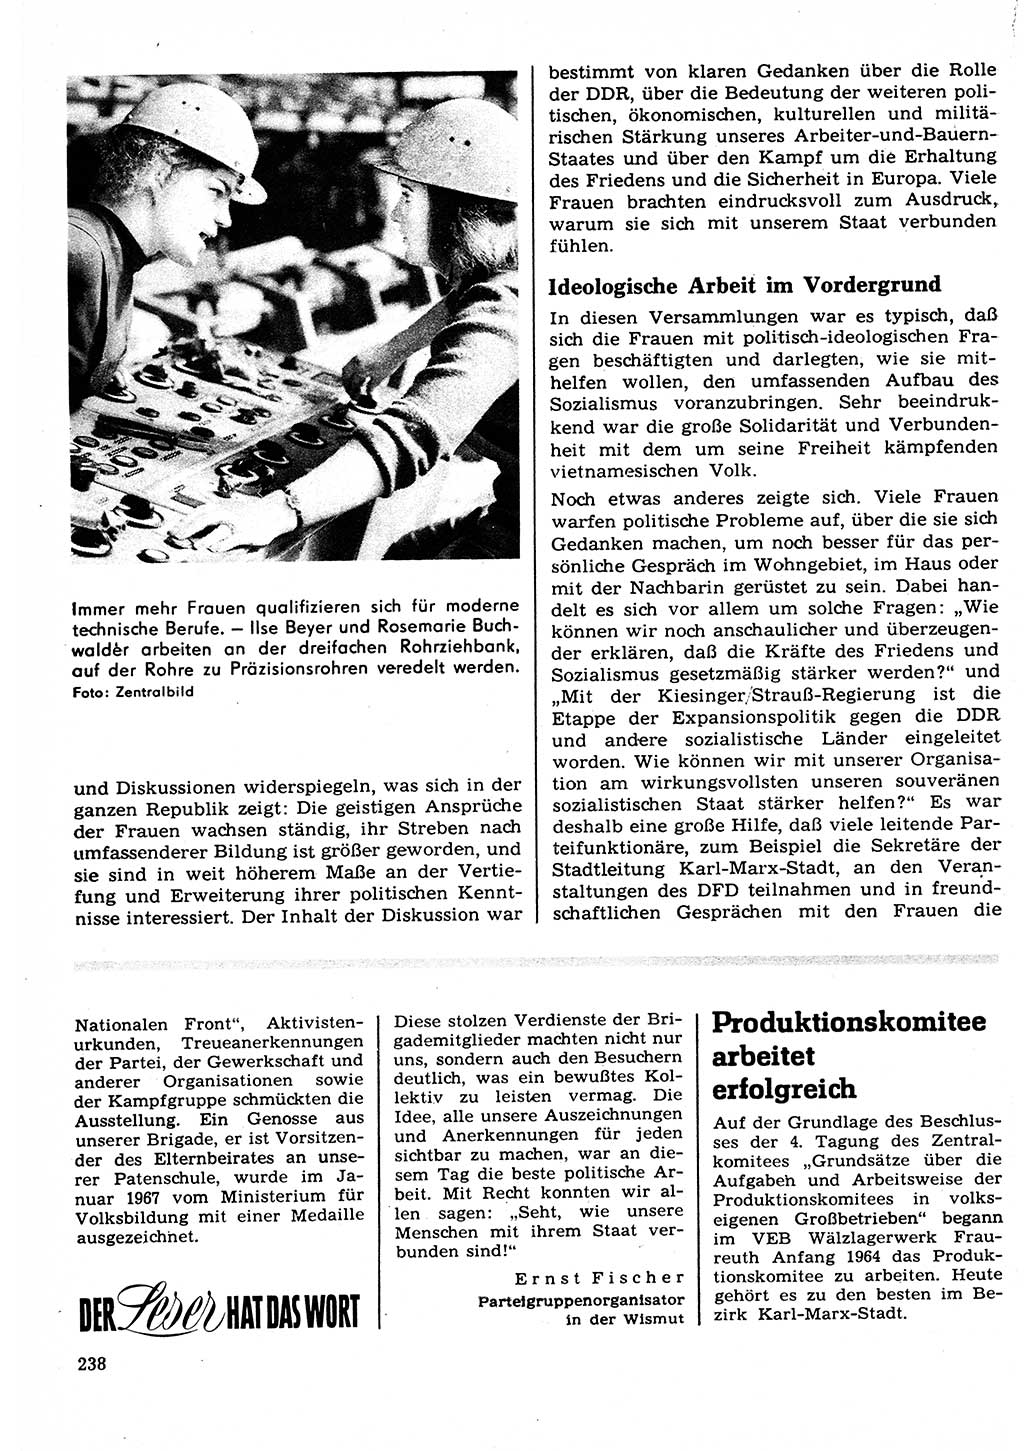 Neuer Weg (NW), Organ des Zentralkomitees (ZK) der SED (Sozialistische Einheitspartei Deutschlands) für Fragen des Parteilebens, 22. Jahrgang [Deutsche Demokratische Republik (DDR)] 1967, Seite 238 (NW ZK SED DDR 1967, S. 238)